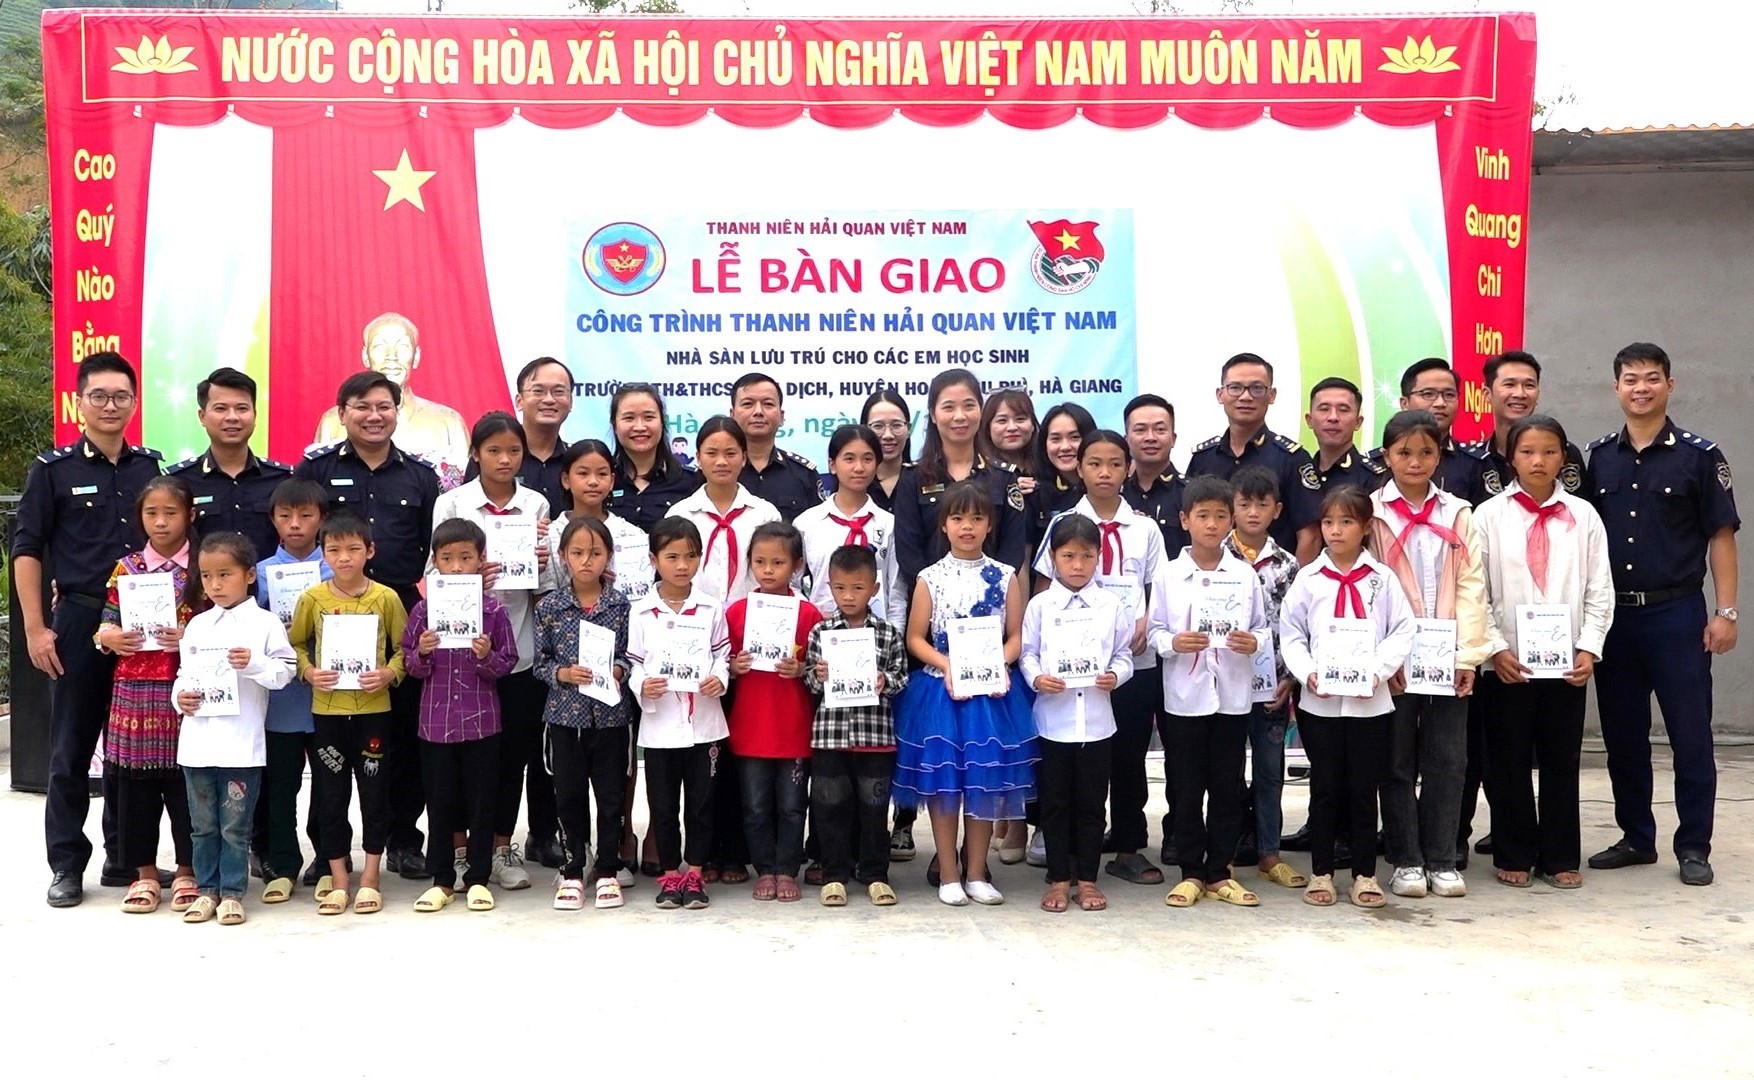 Đoàn Thanh niên Tổng cục Hải quan Việt Nam và Cục Hải quan Hà Giang tặng học bổng cho các em học sinh.